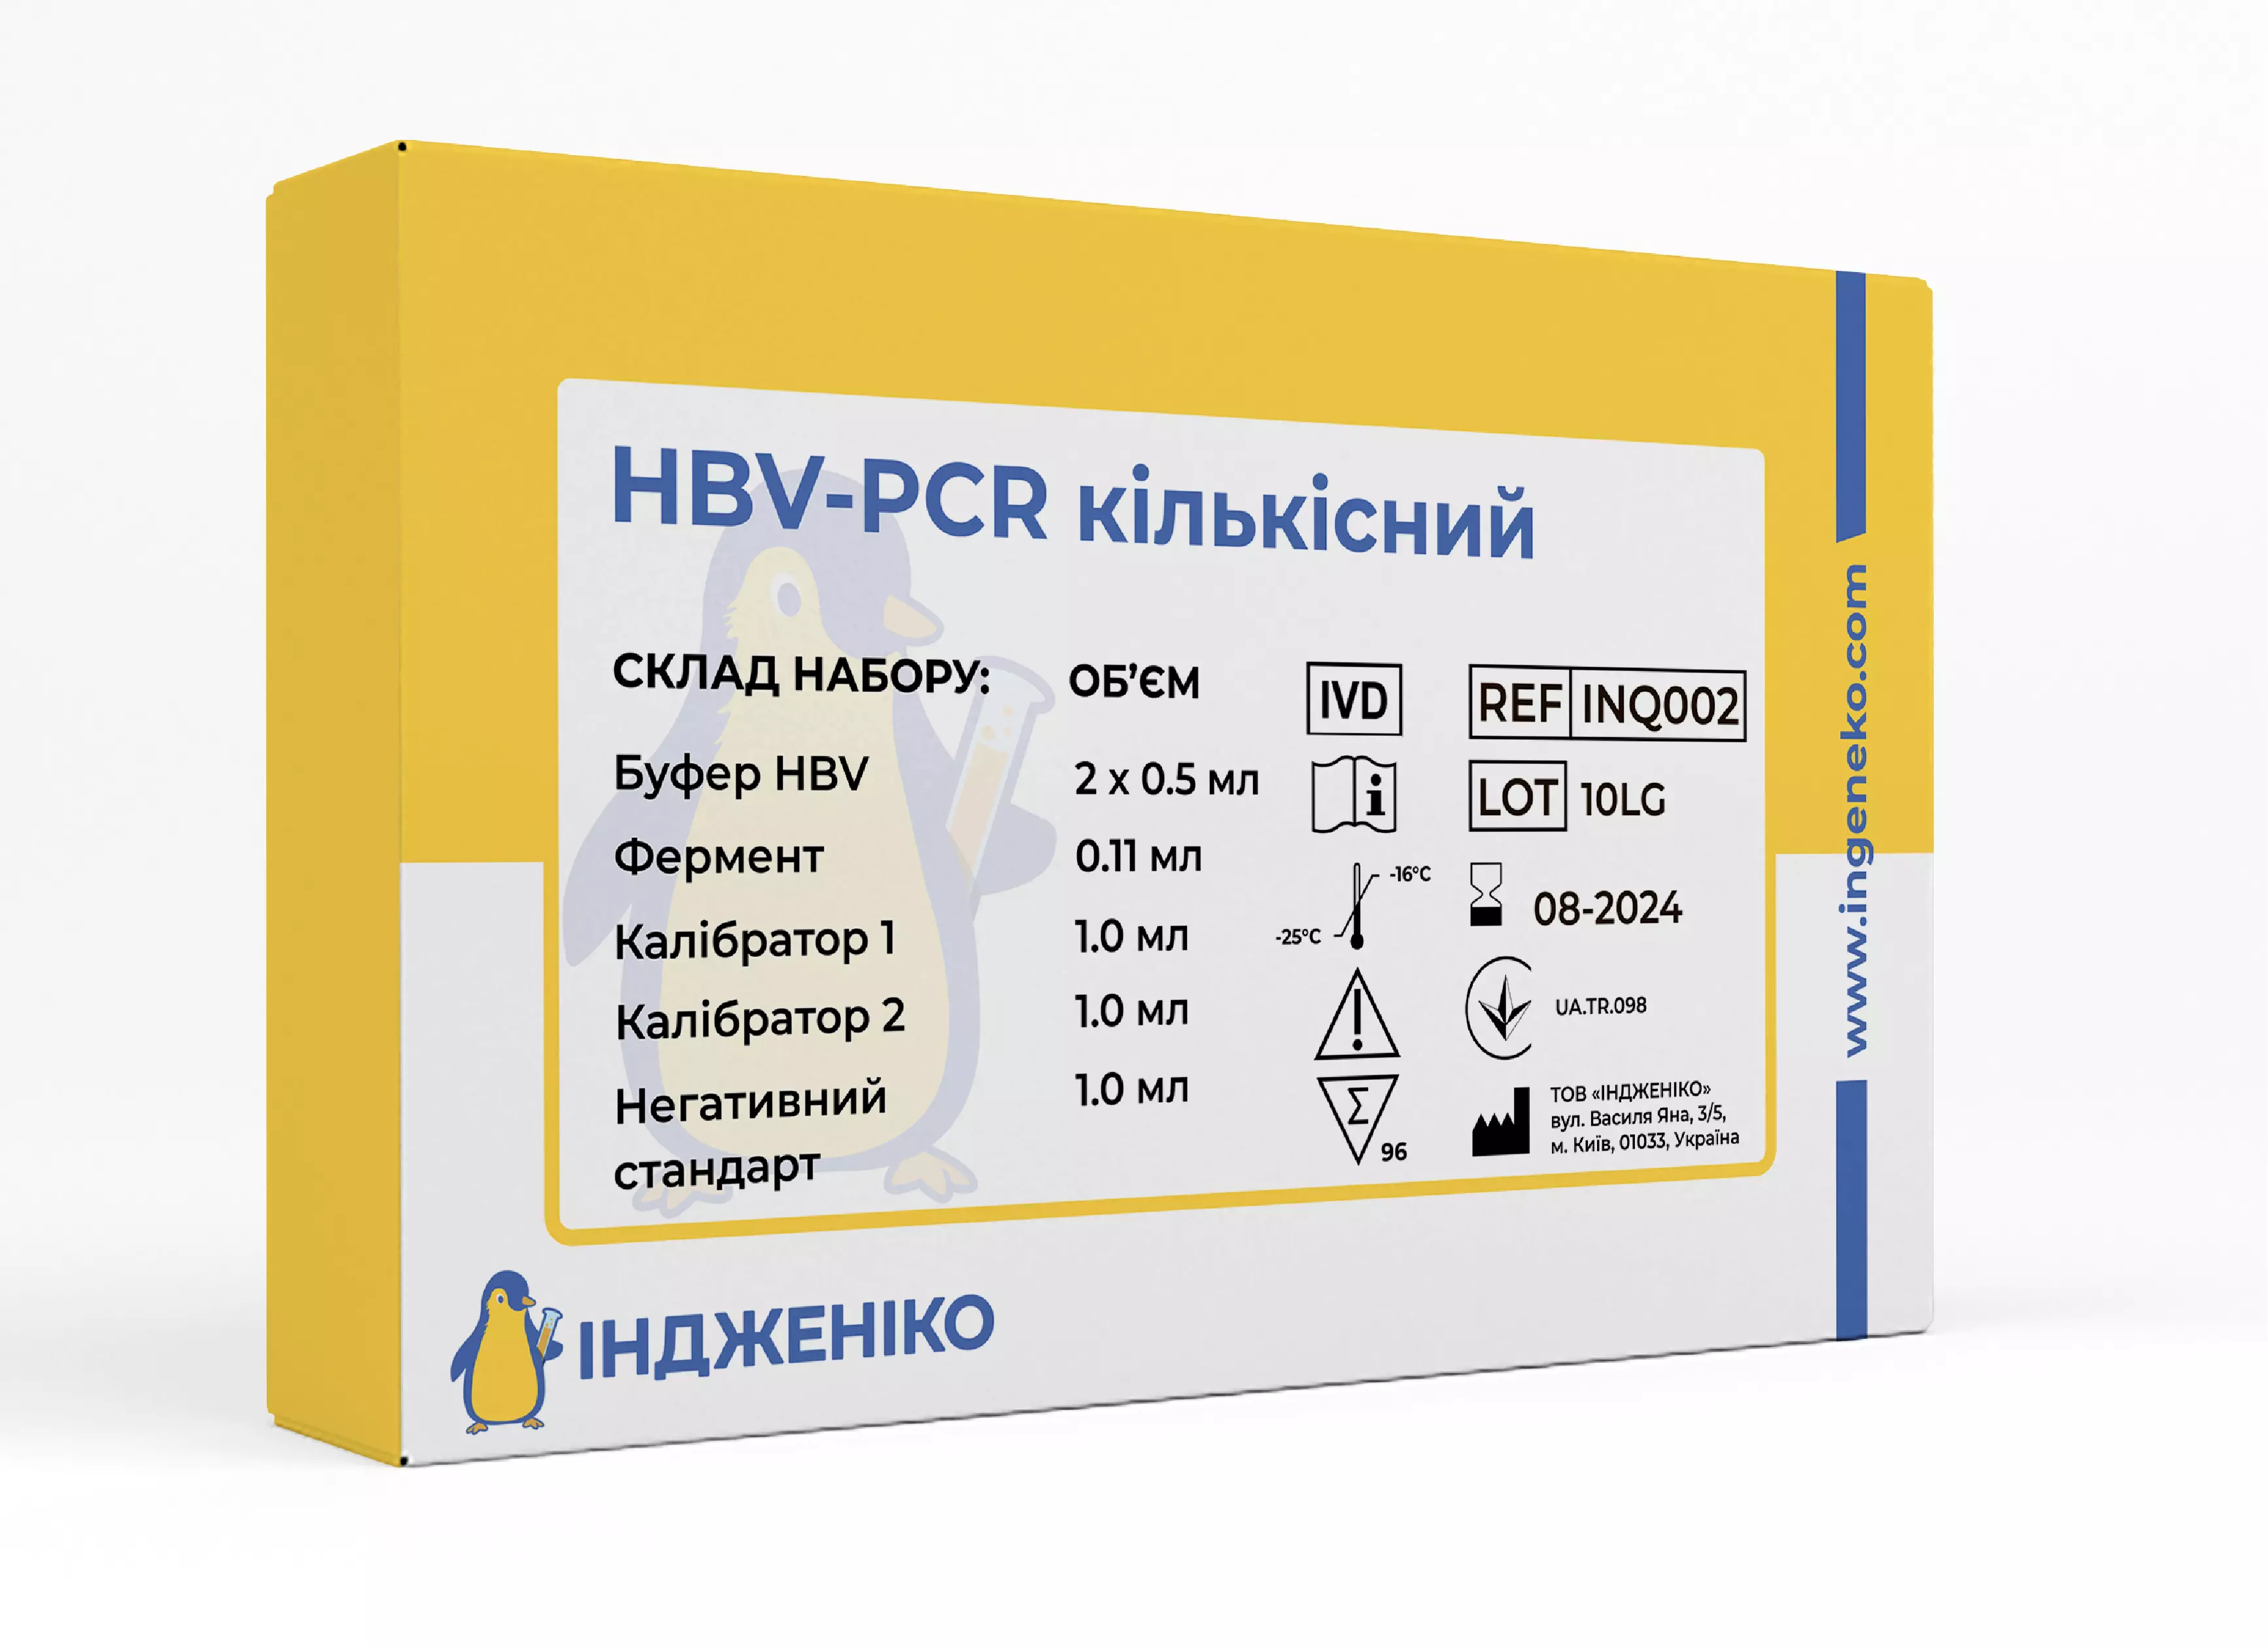 HBV-PCR кількісний